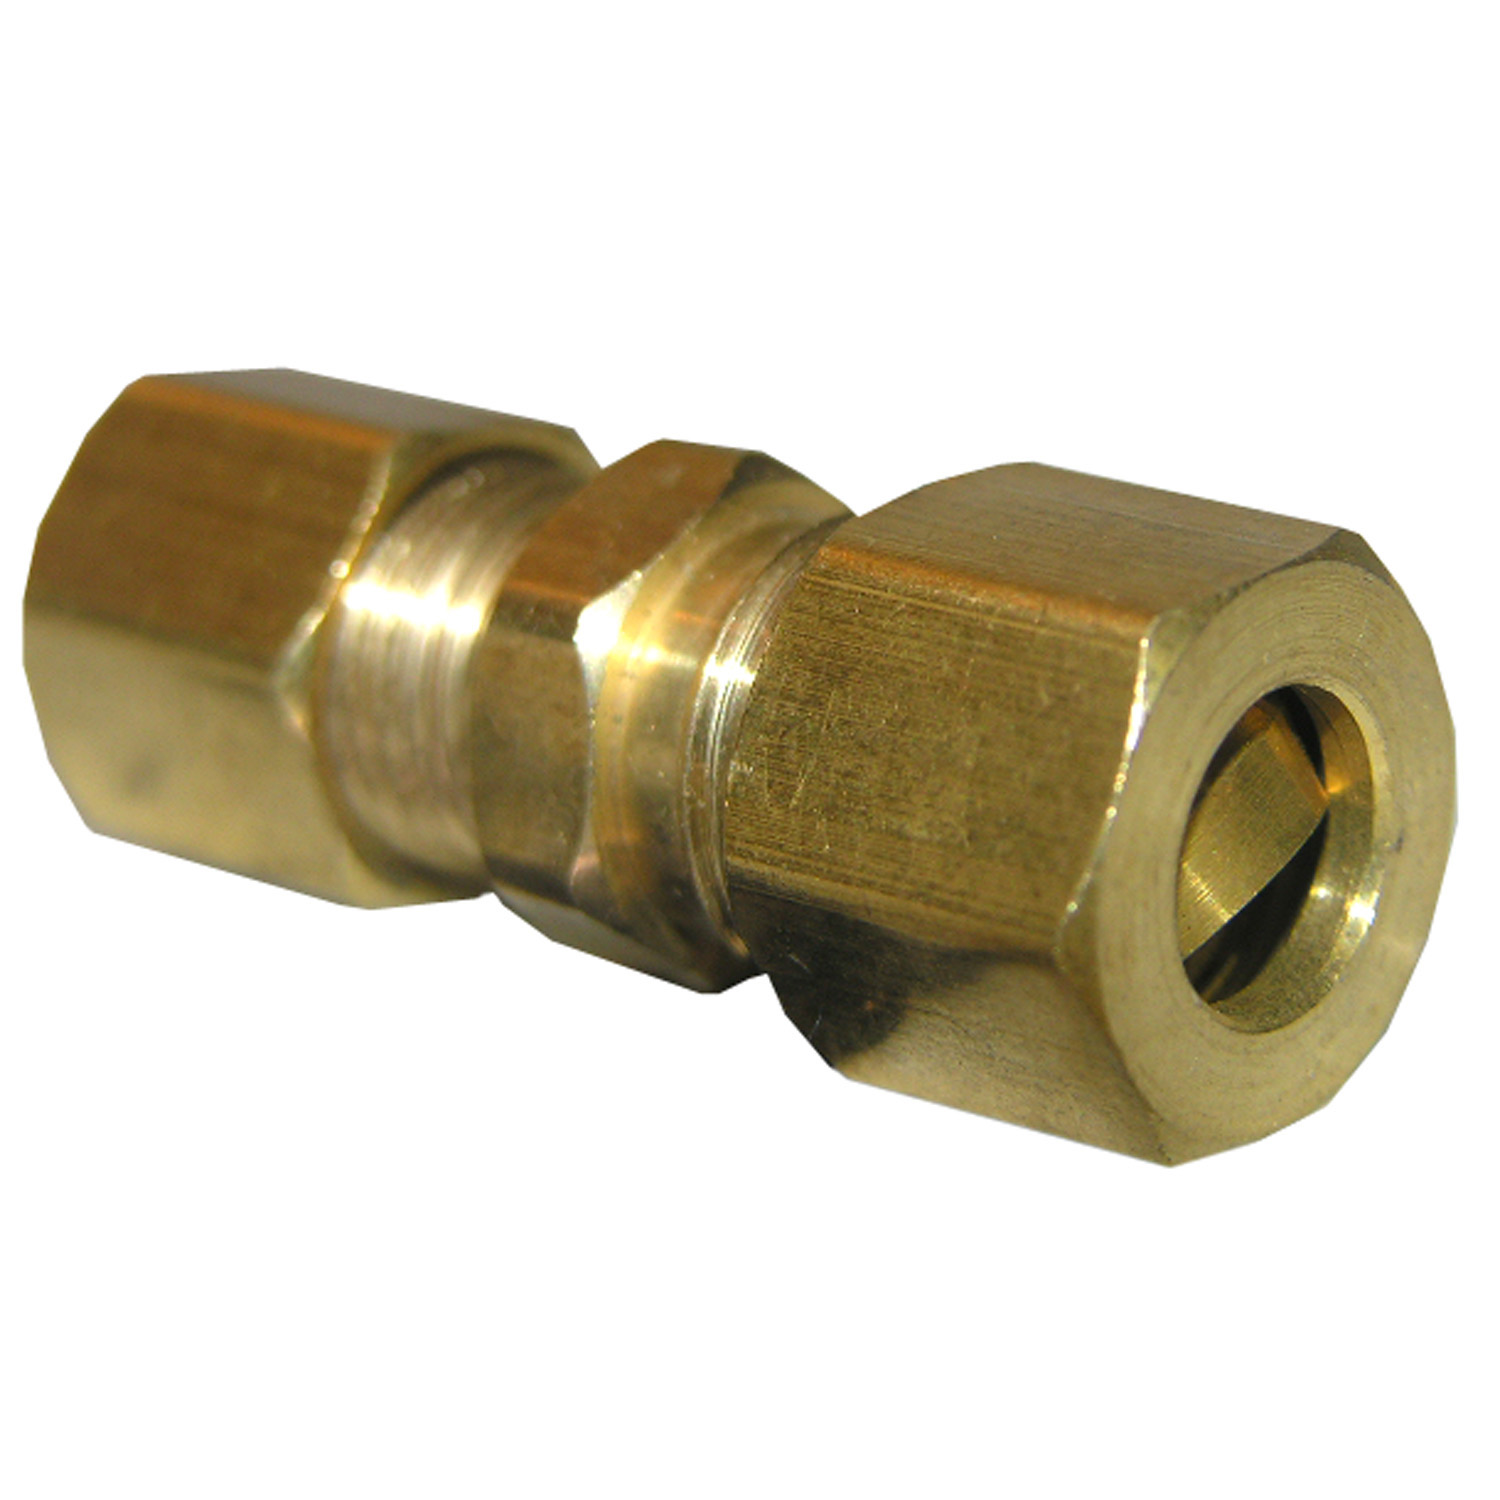 17-6221 Pipe Union, 5/16 in, Compression, Brass, 150 psi Pressure